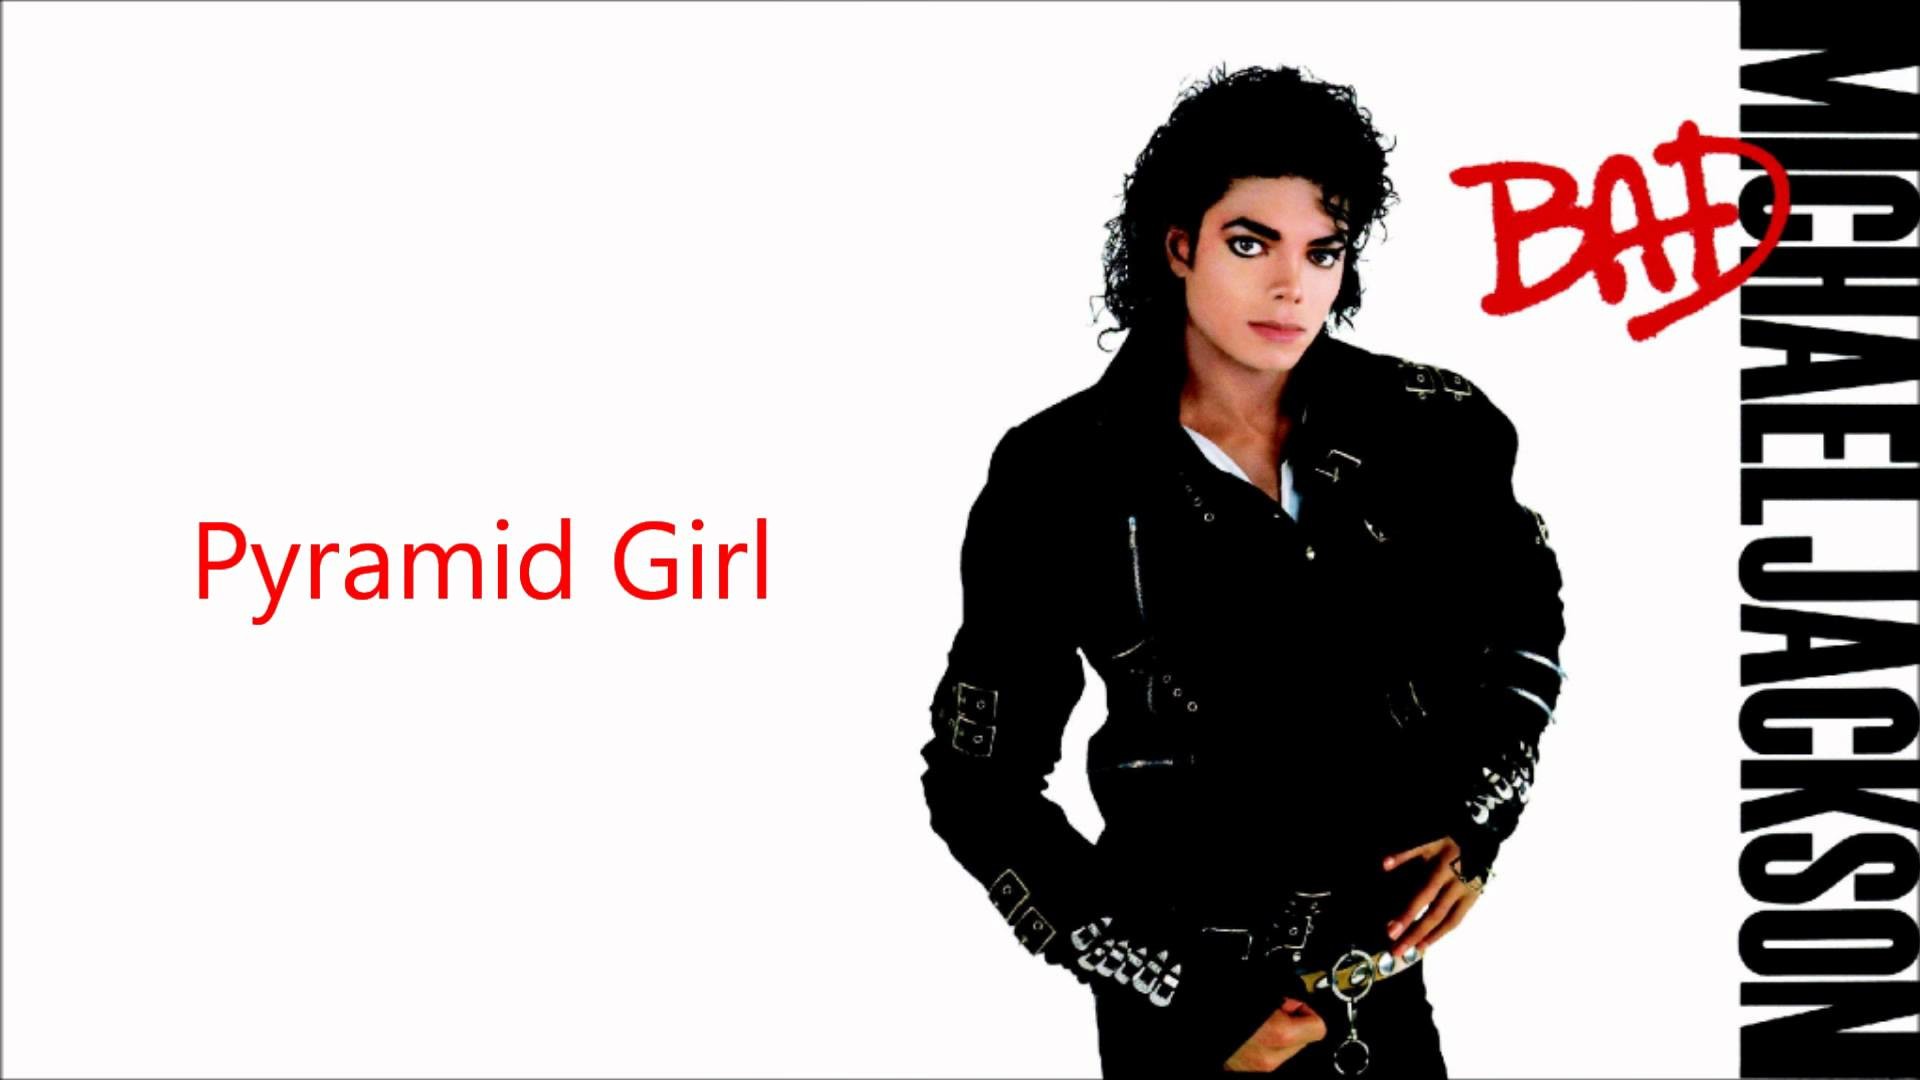 Michael jackson chicago. Michael Jackson. Michael Jackson Bad 1987. Michael Jackson Bad обложка.